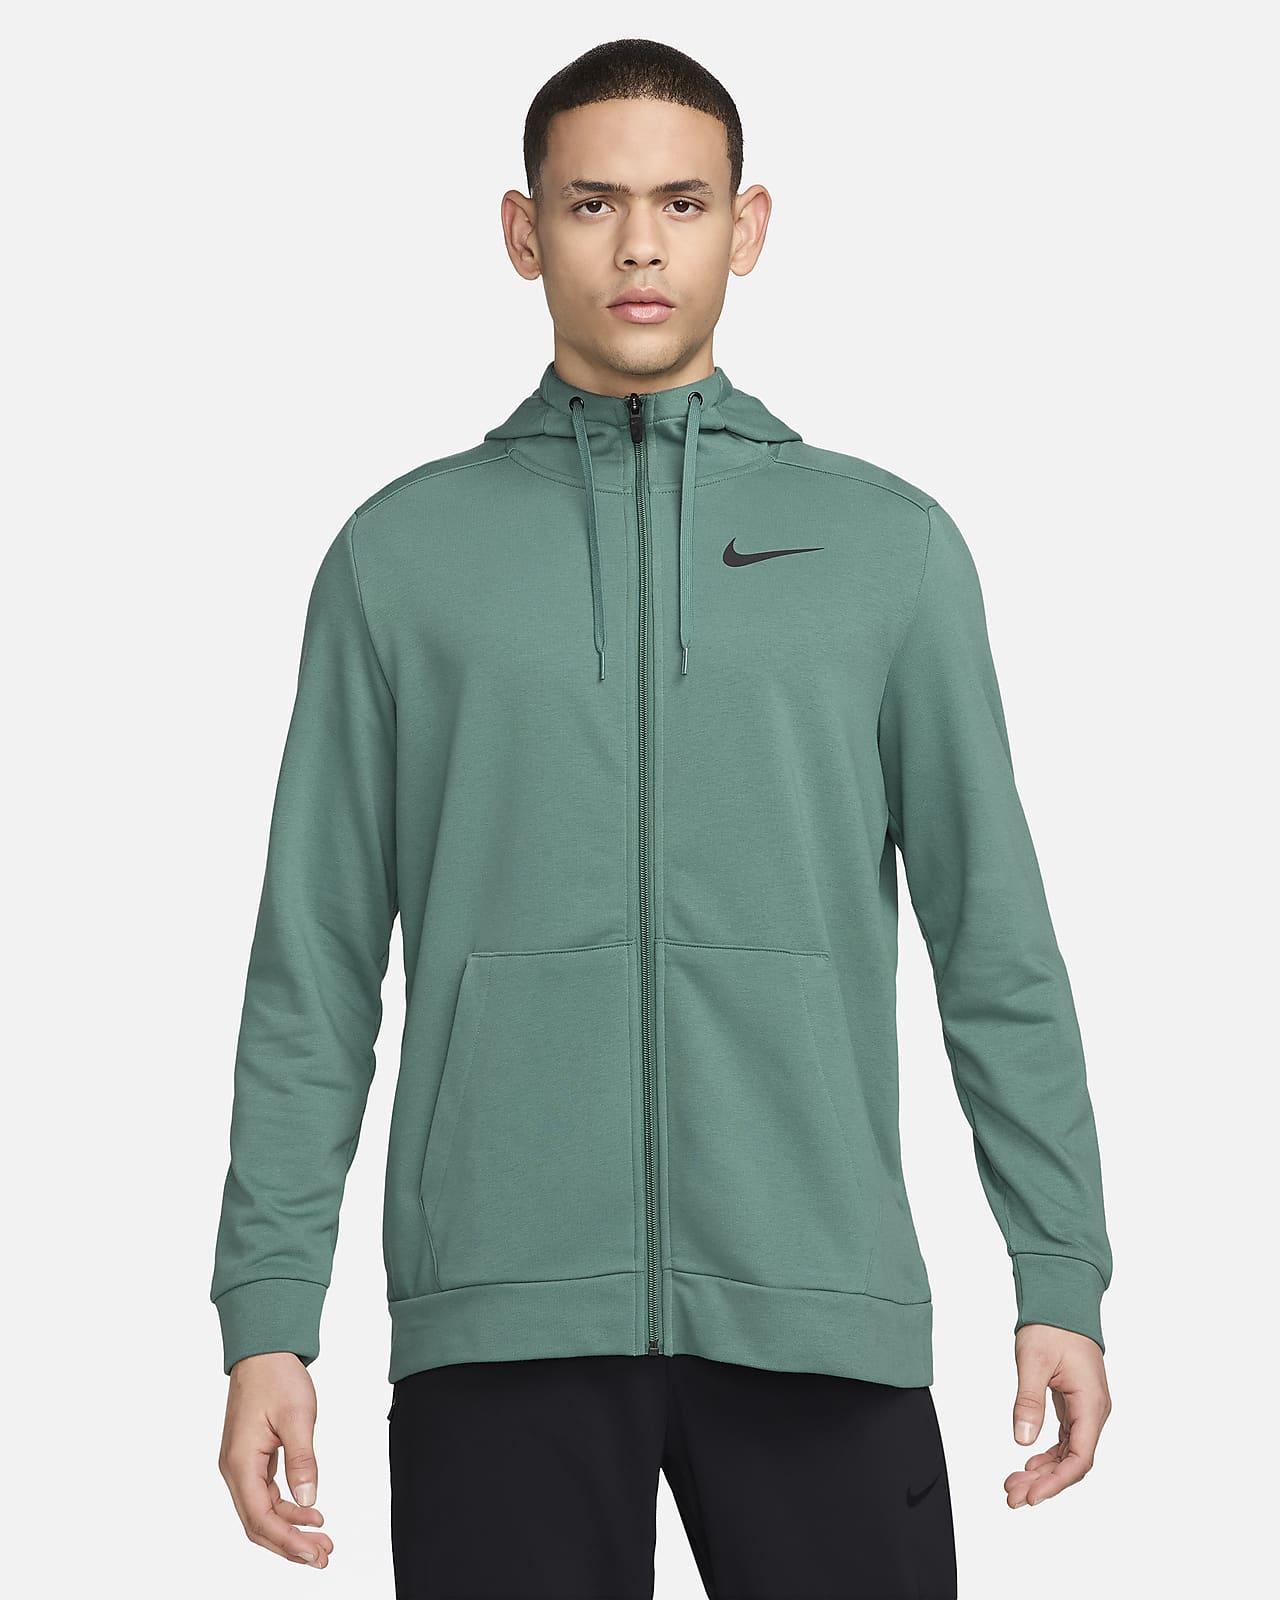 Męska bluza z kapturem i zamkiem na całej długości Dri-FIT Nike Dry